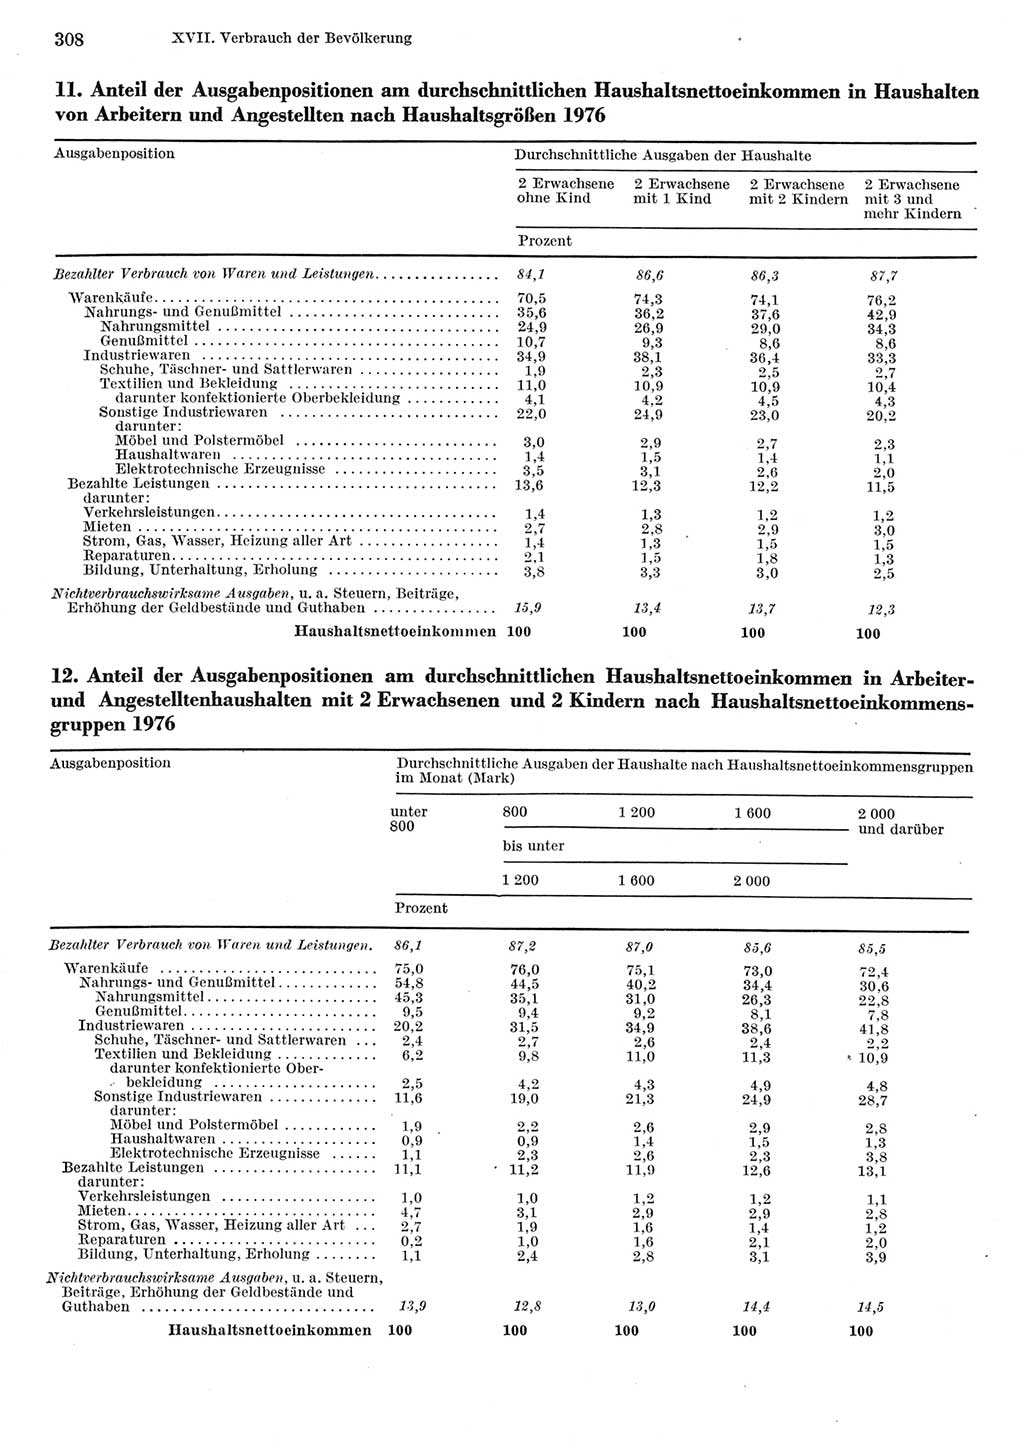 Statistisches Jahrbuch der Deutschen Demokratischen Republik (DDR) 1977, Seite 308 (Stat. Jb. DDR 1977, S. 308)